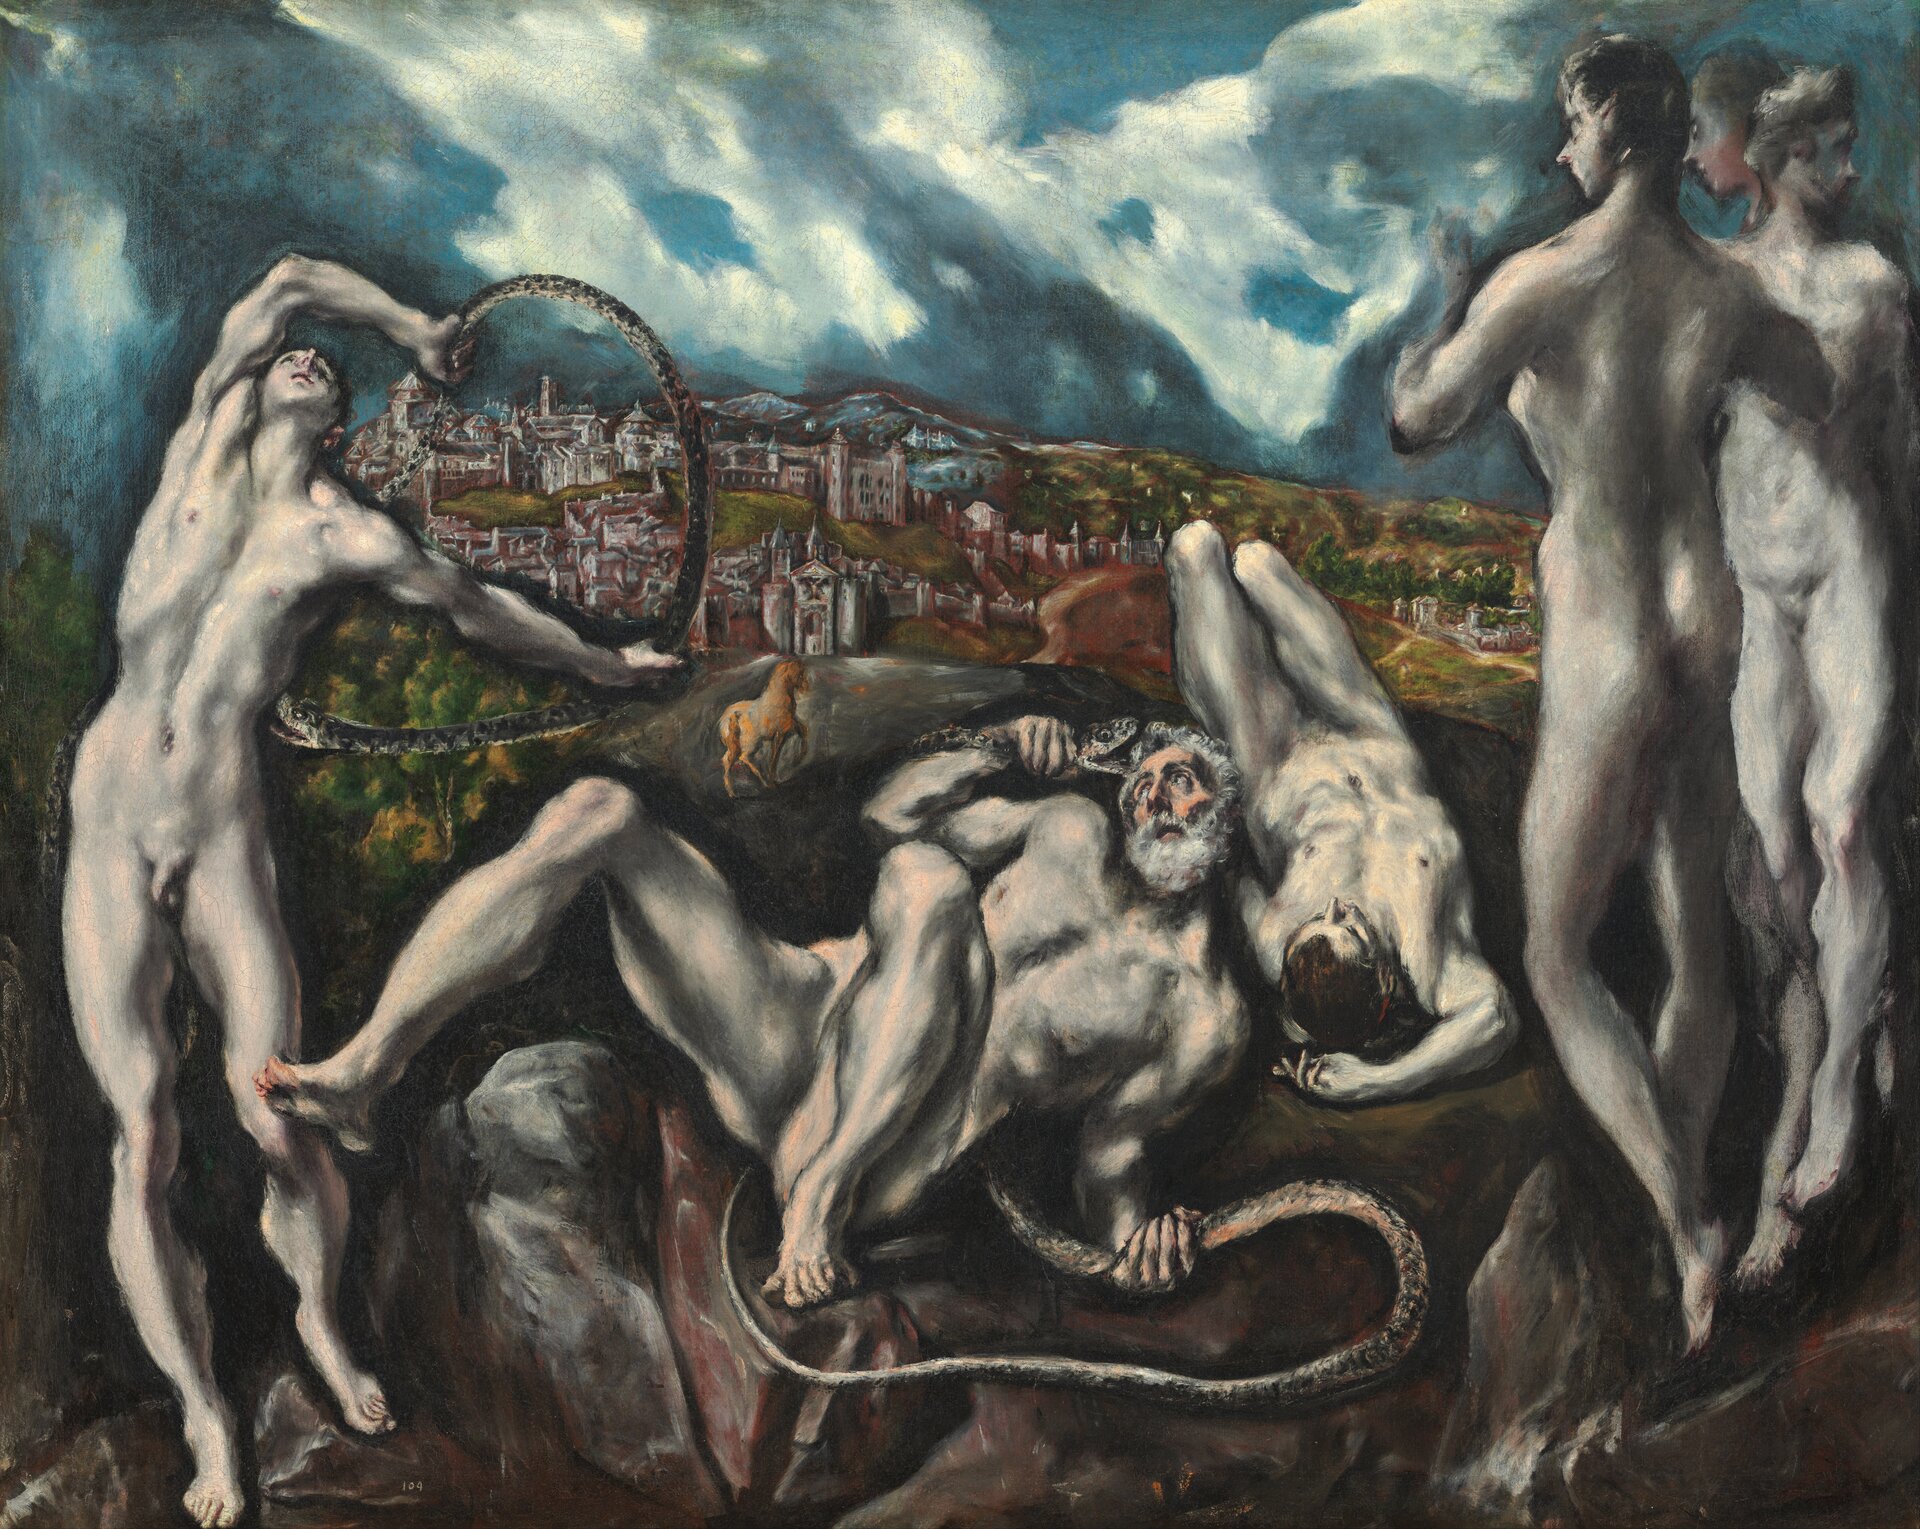 Ilustracja o kształcie poziomego prostokąta przedstawia obraz El Greca „Laokoon". Dzieło przedstawia w centralnej części scenę walki z wężami Laokoona i dwóch mężczyzn oraz trzech obserwatorów tej sceny. Tłem ilustracji jest daleki widok na Toledo oraz niespokojne, ciemnoniebieskie niebo z białymi chmurami. 